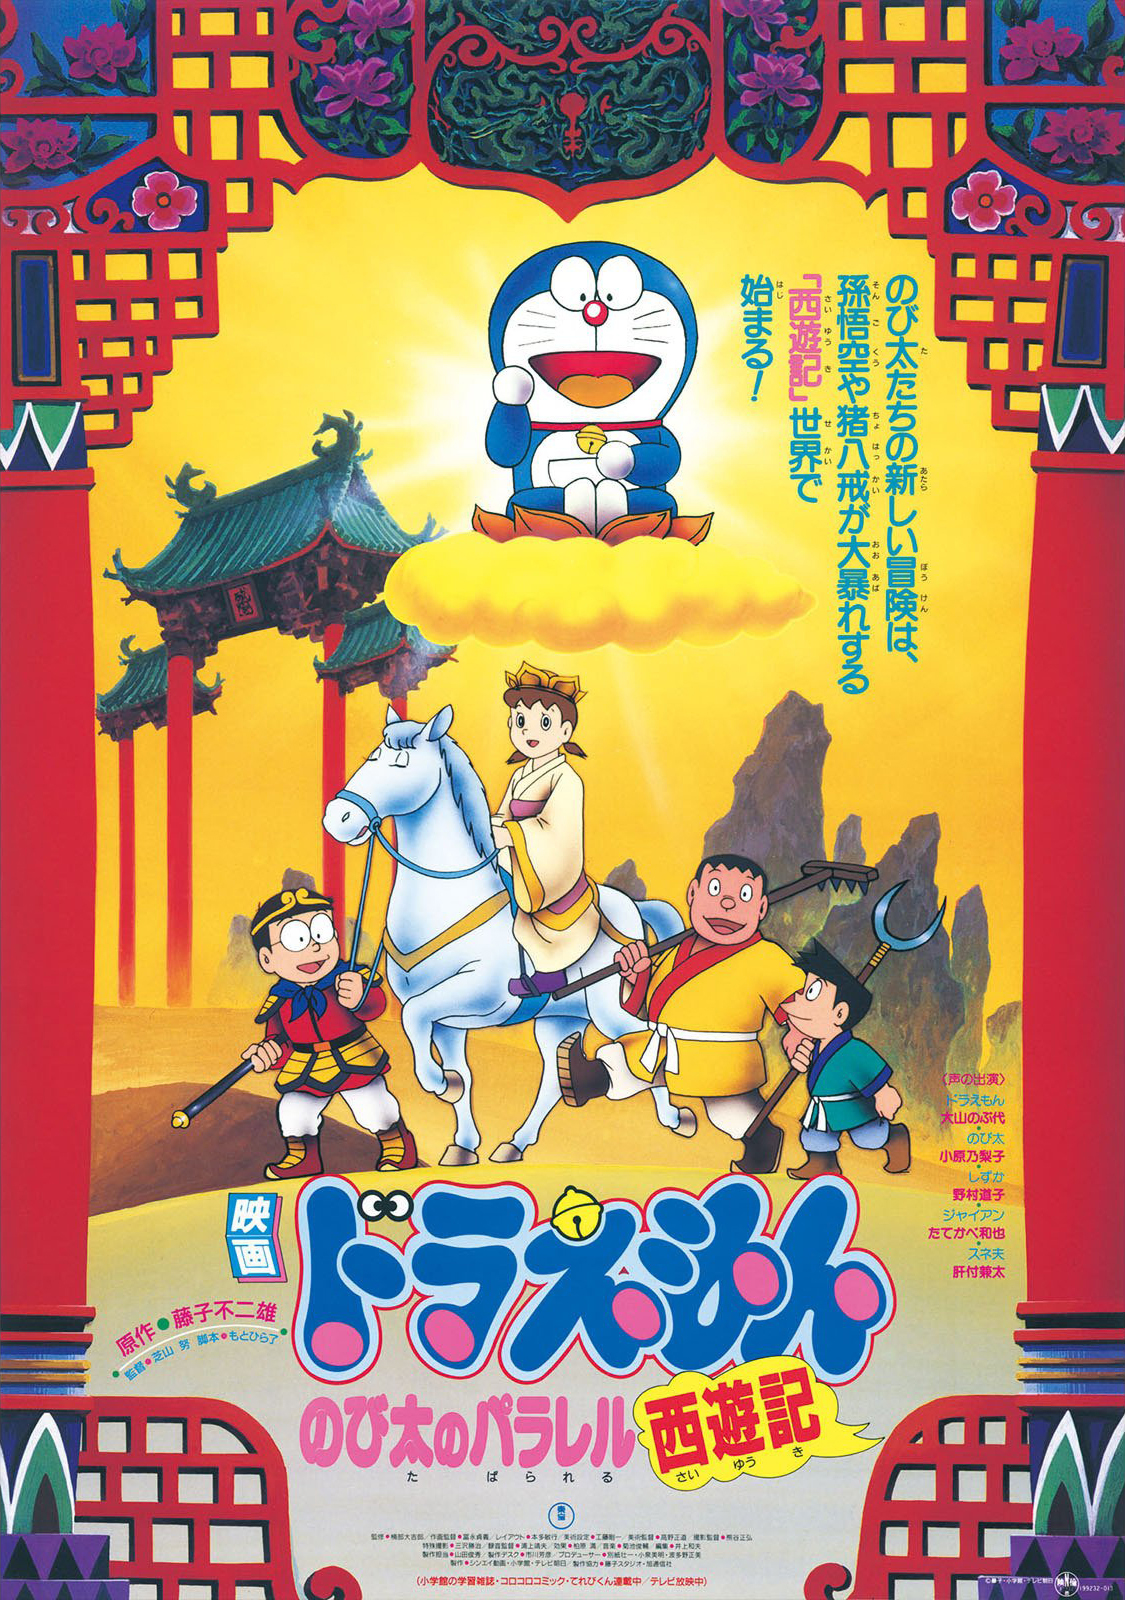 Doraemon The Movie 1988 โดเรม่อน เดอะมูฟวี่ ตอน ท่องแดนเทพนิยายไซอิ๋ว พากย์ไทย